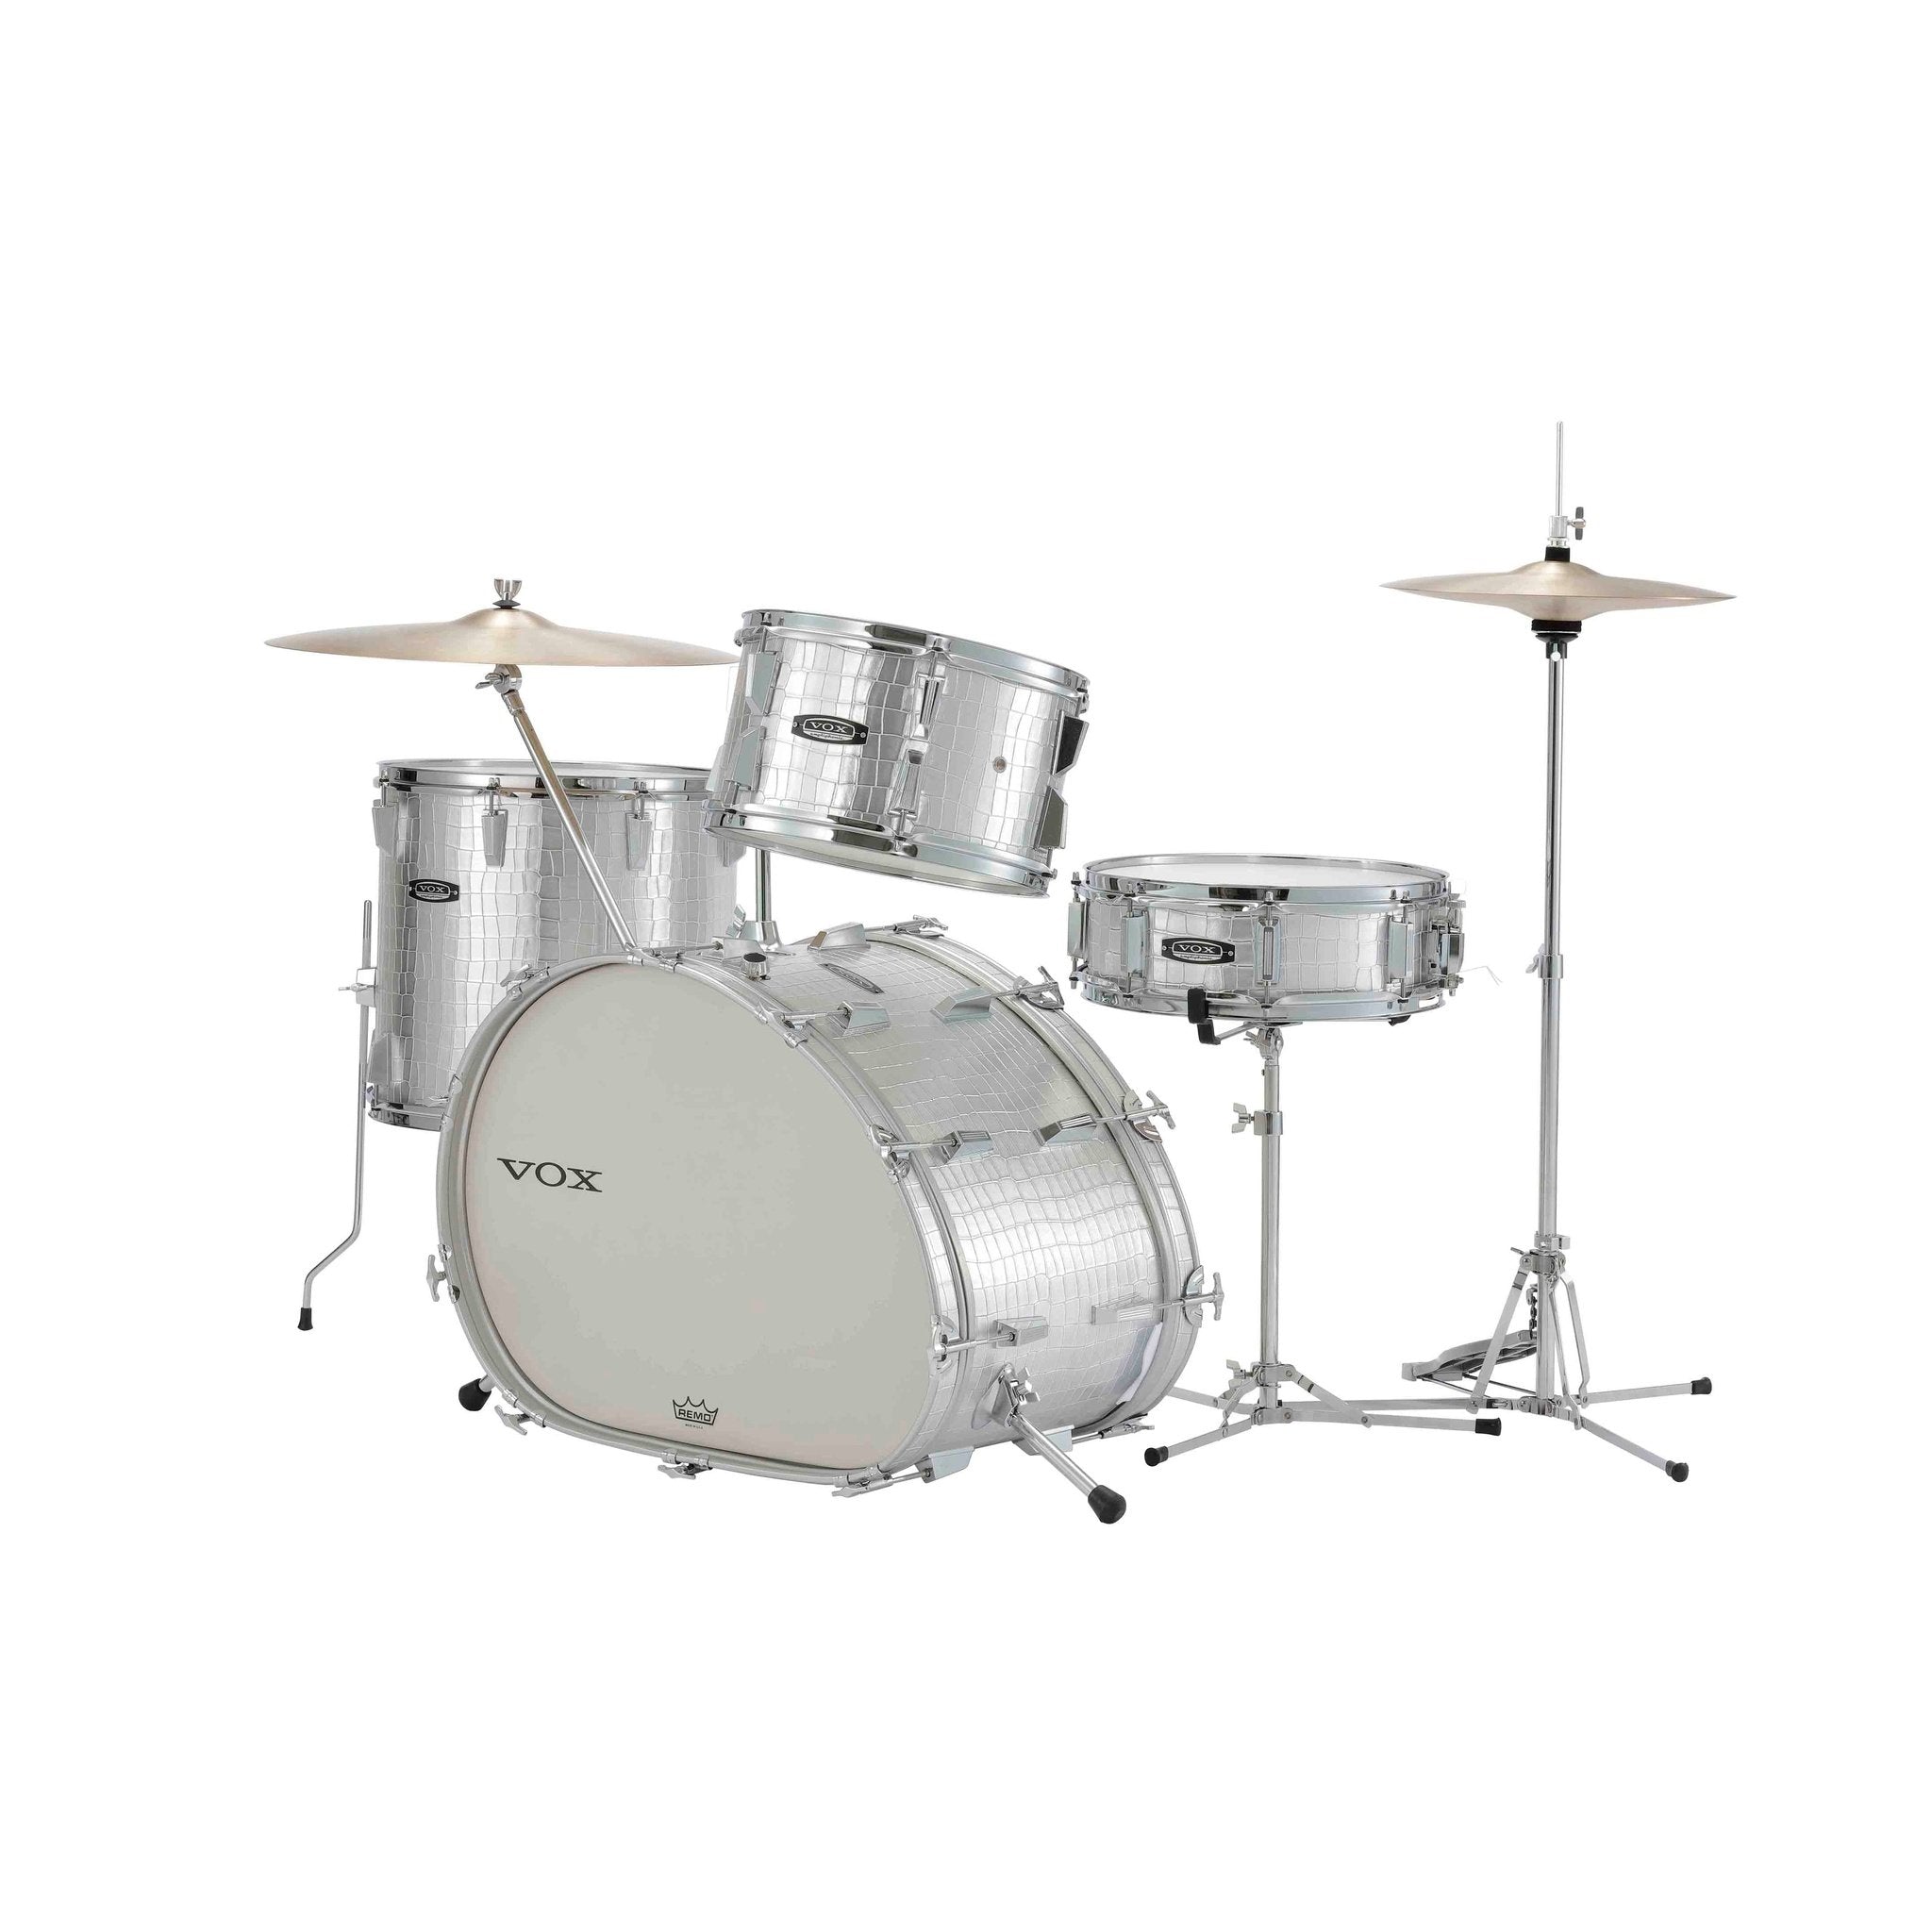 Vox Telstar Drum Kit 2